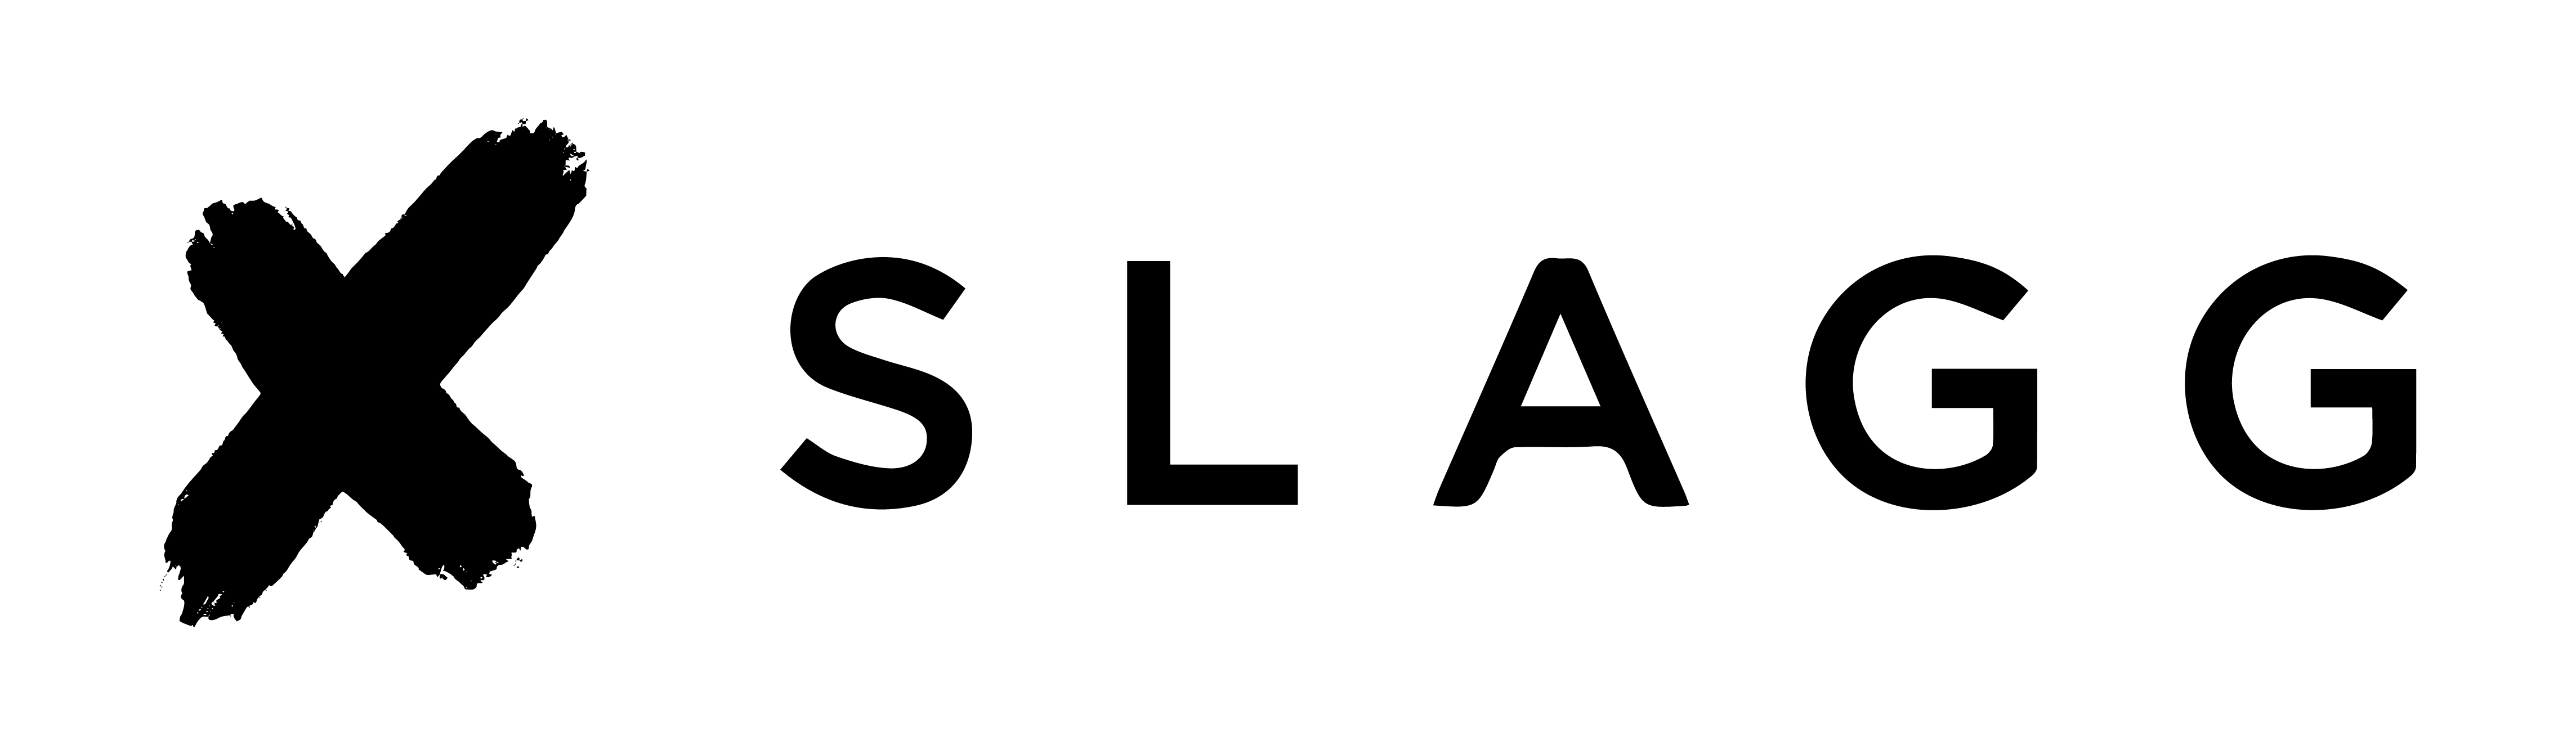 slagg-logo